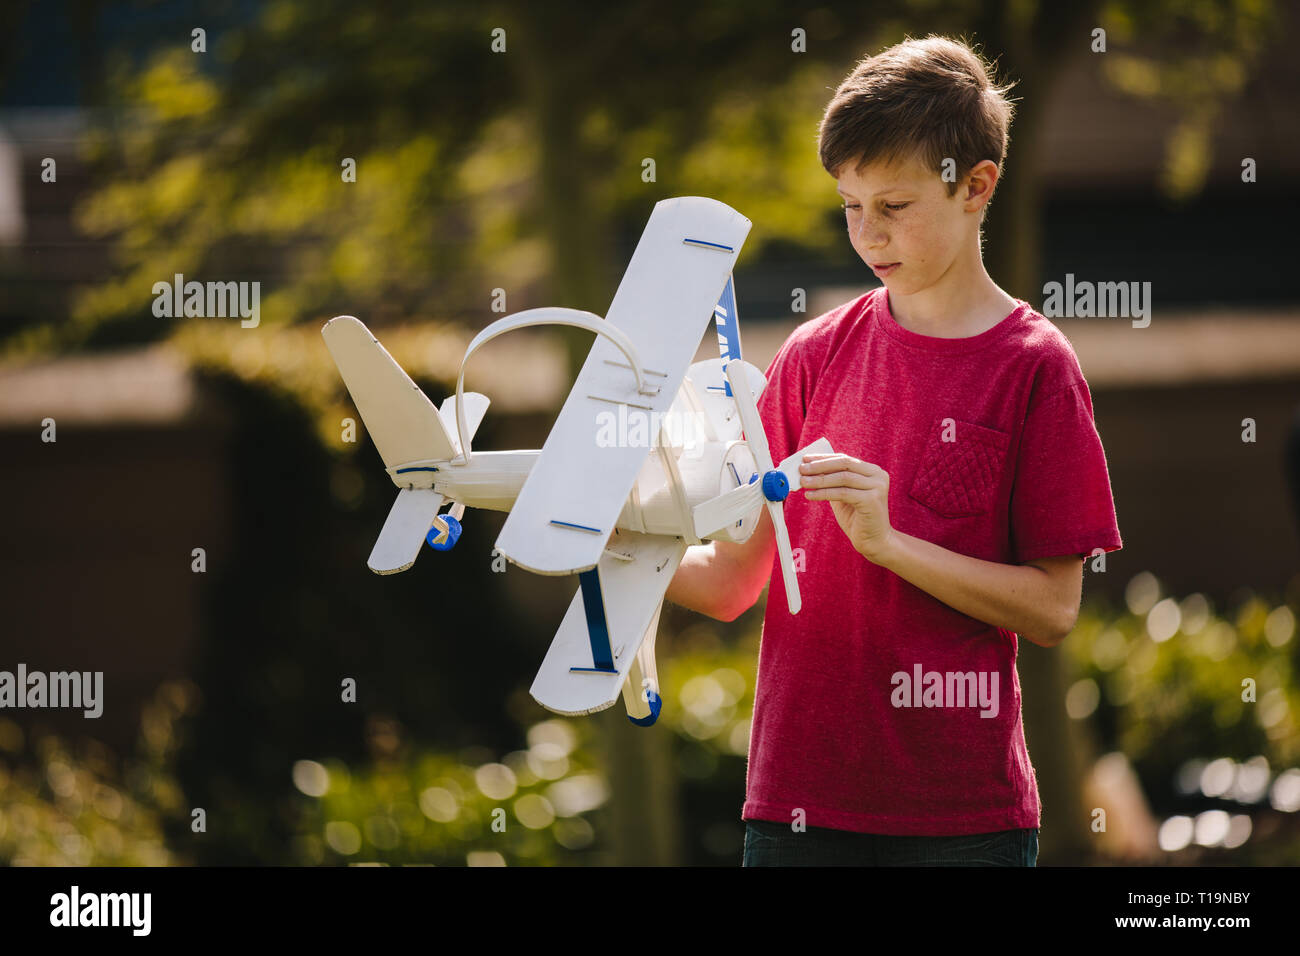 Junge spielt mit einem Spielzeug Flugzeug im Freien. Jugendliche junge Blick auf das Spielzeug Flugzeug in seine Hände im Freien. Stockfoto